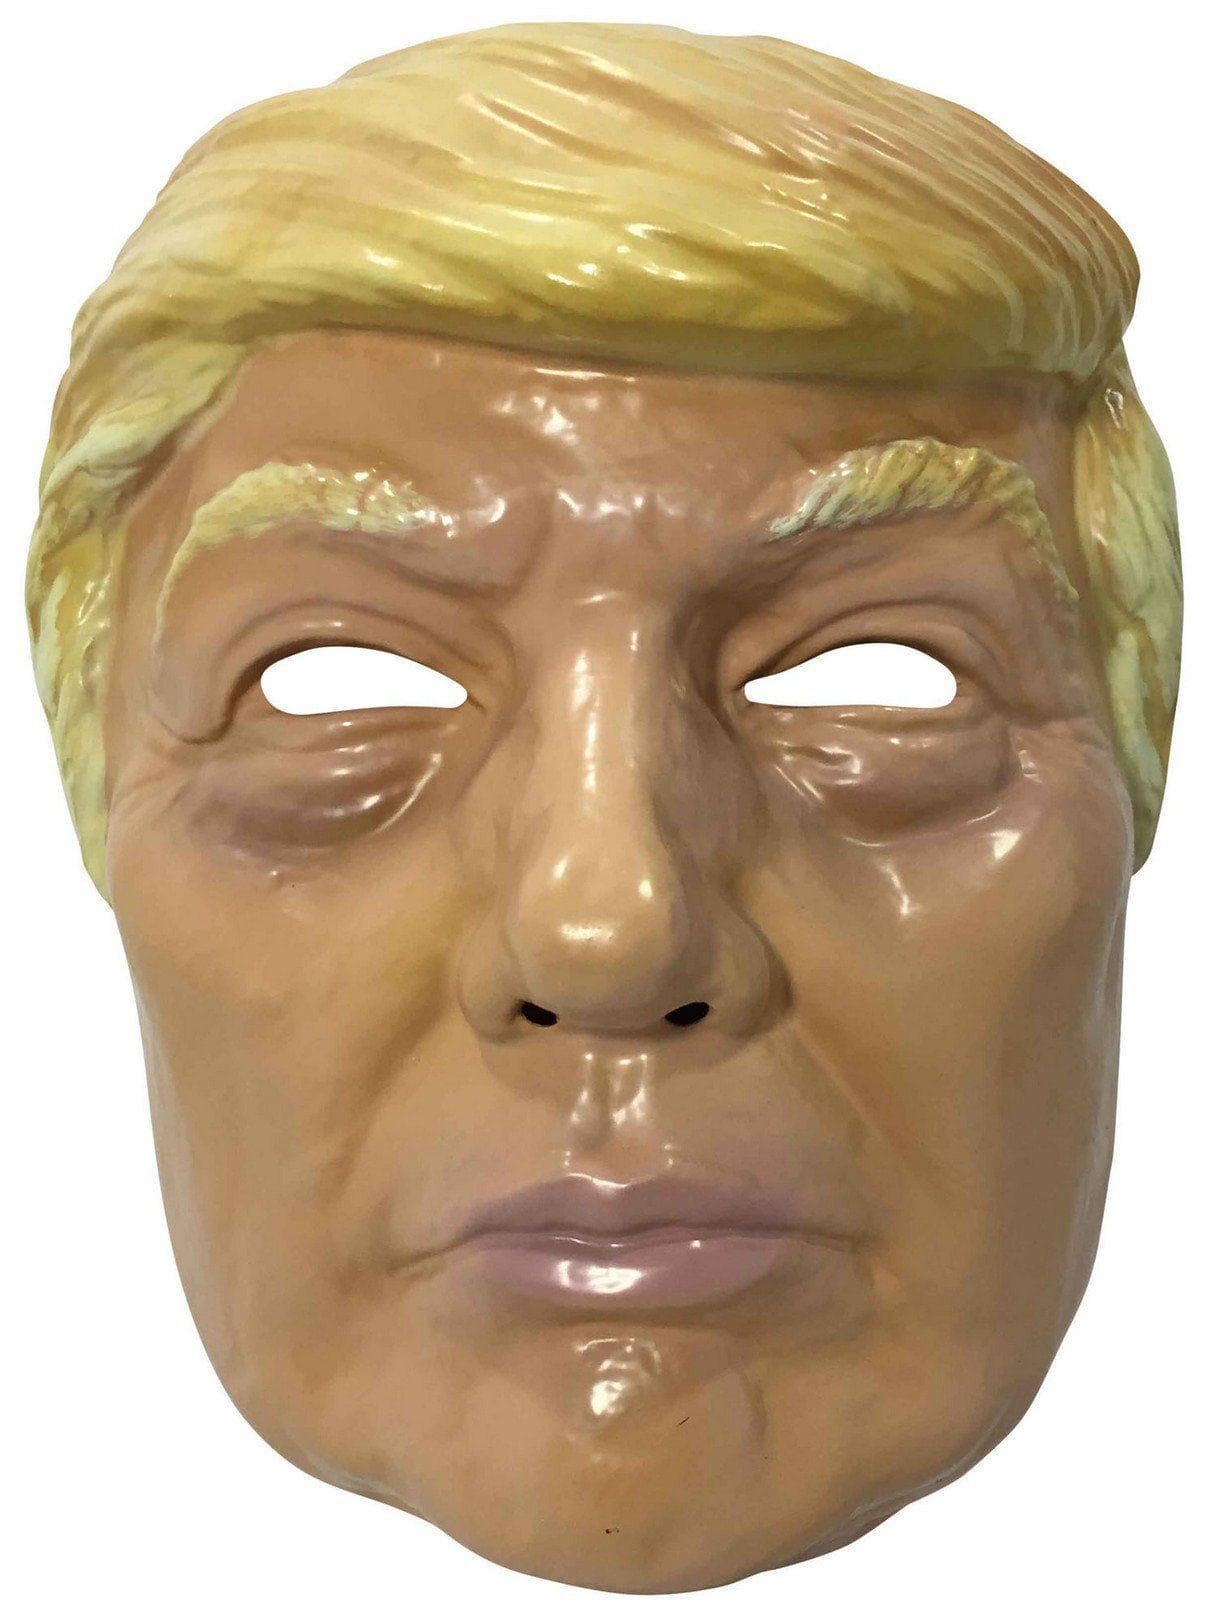 Plastic Trump Mask - costumes.com